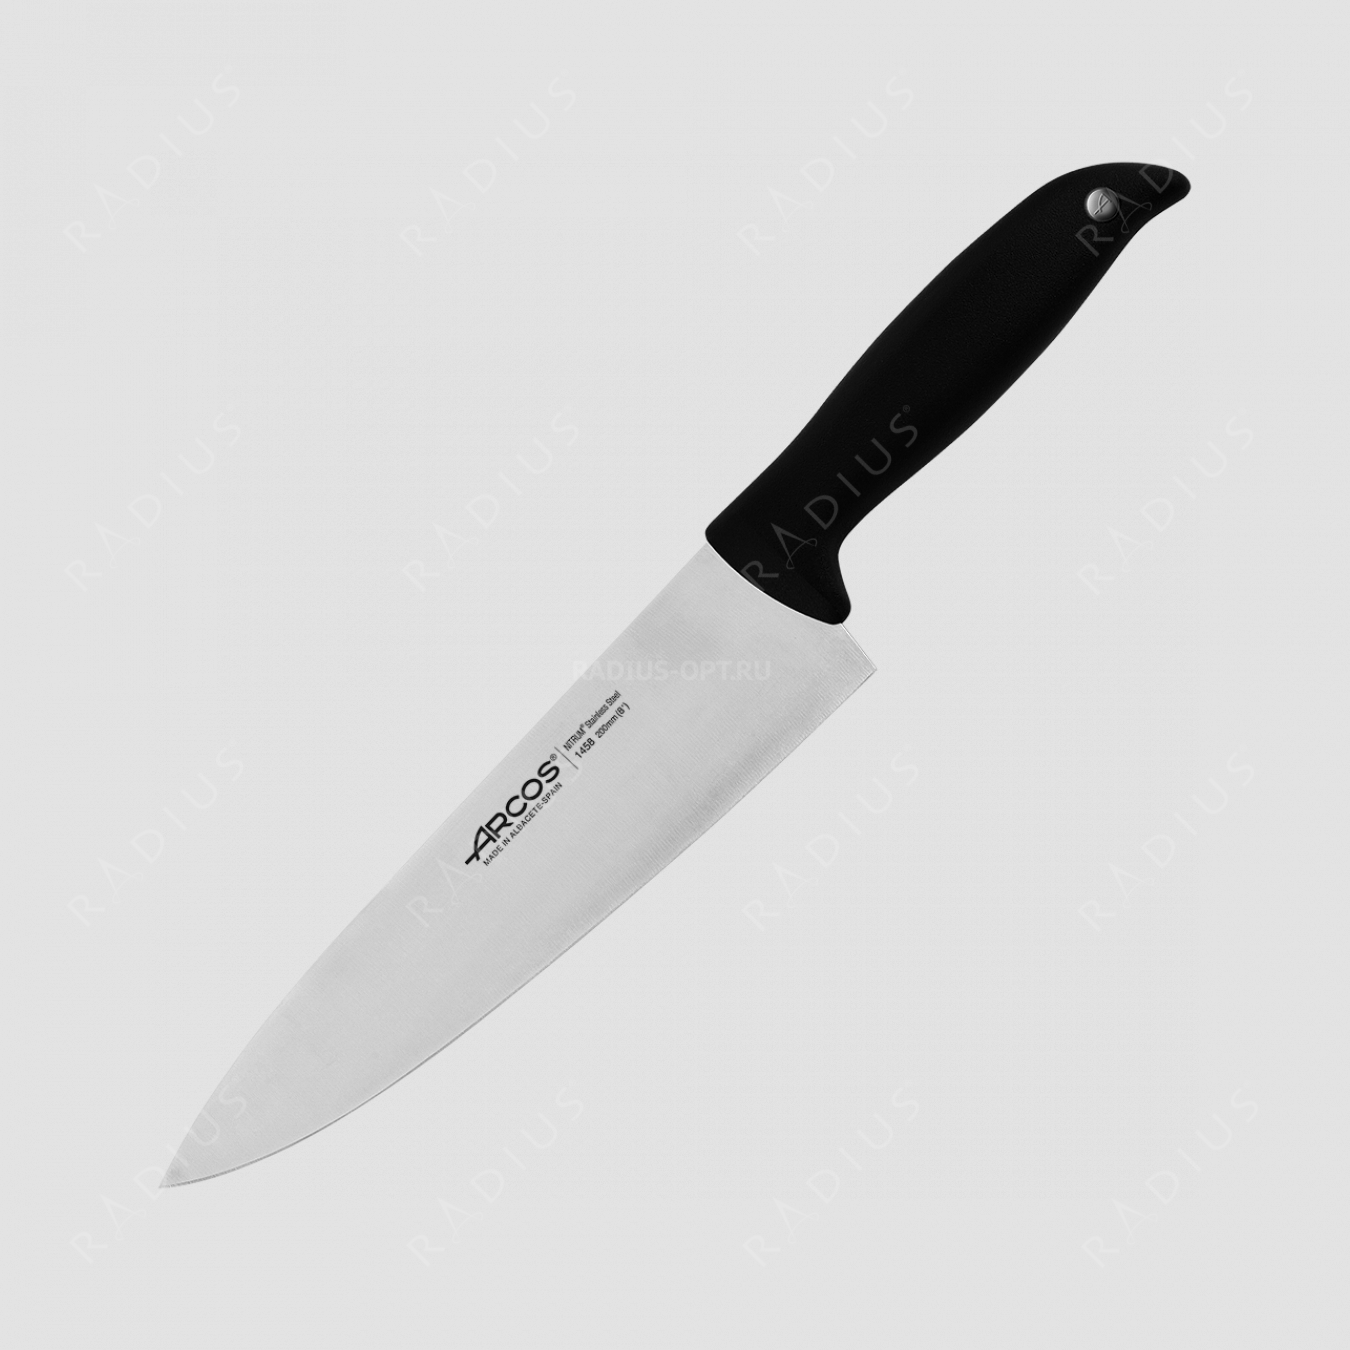 Профессиональный поварской кухонный нож 20 см, серия Menorca, ARCOS, Испания